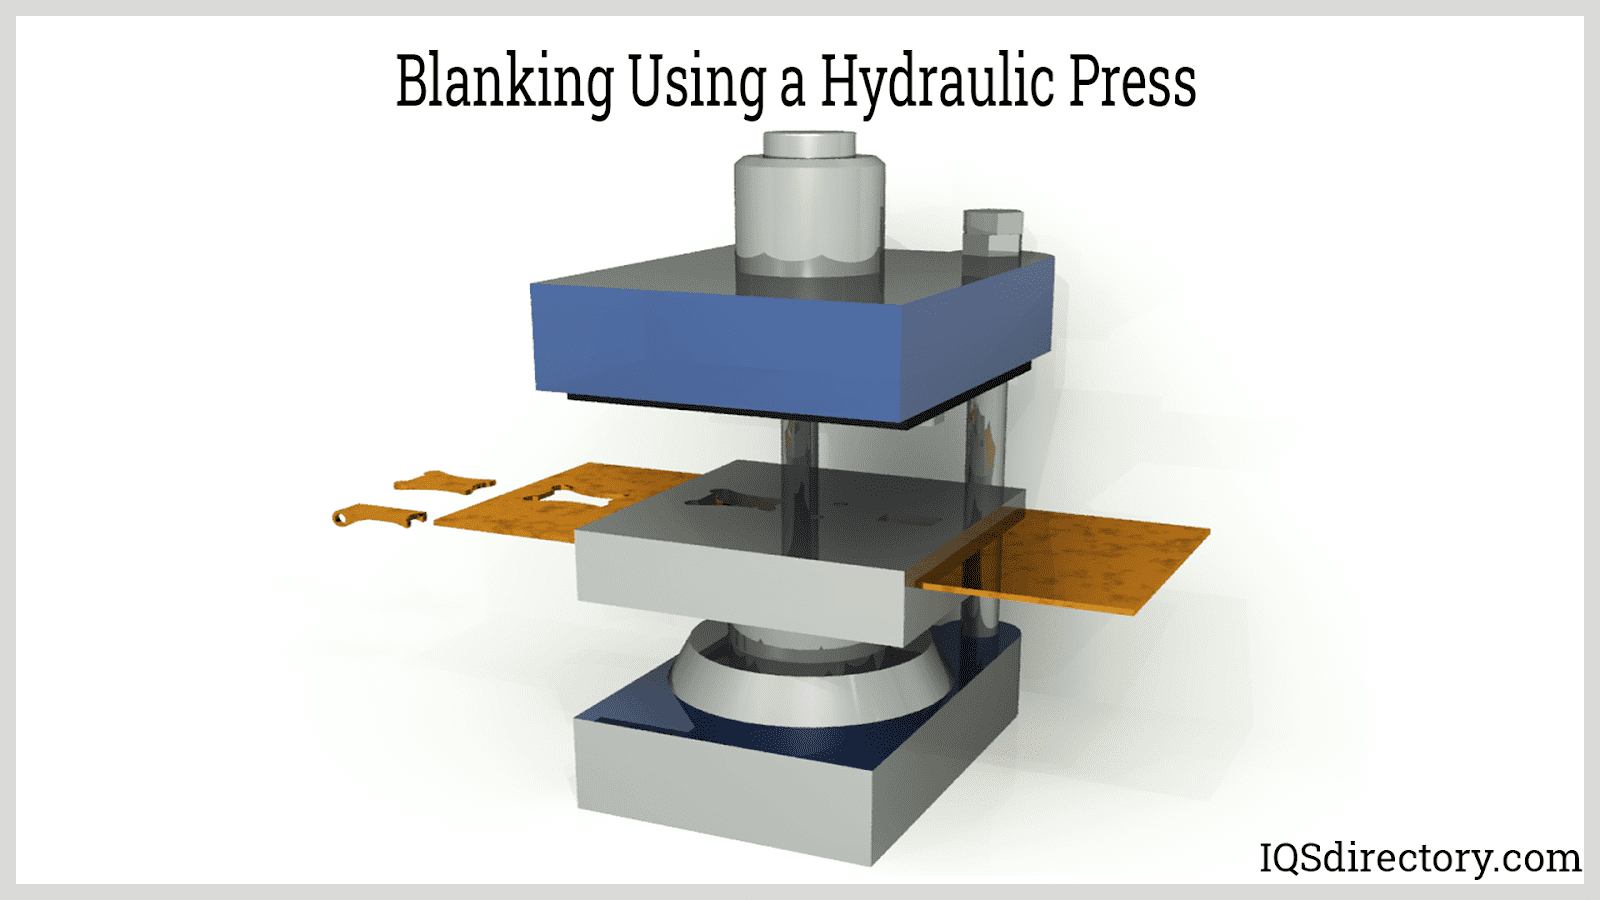 Blanking Using a Hydraulic Press